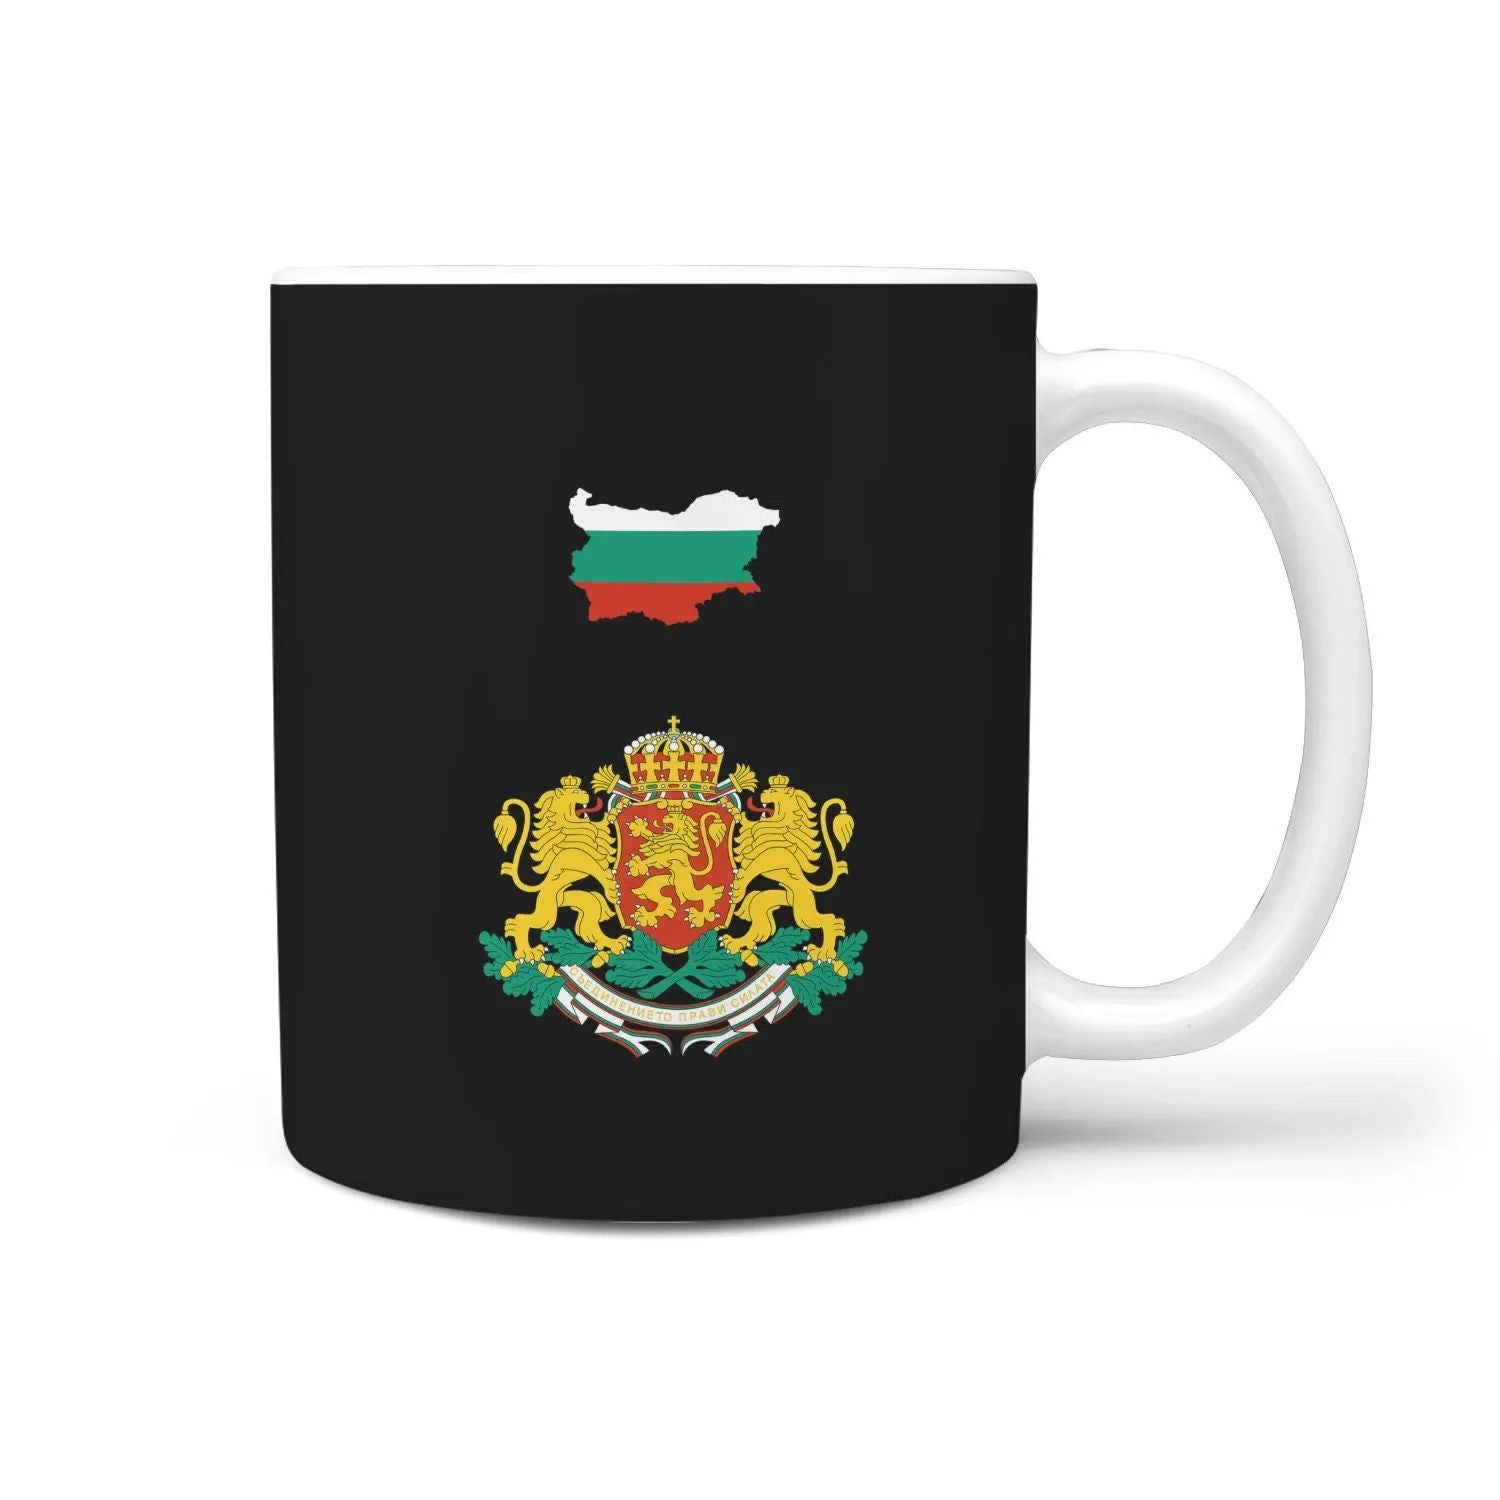 bulgaria-mug-coat-of-arm-map